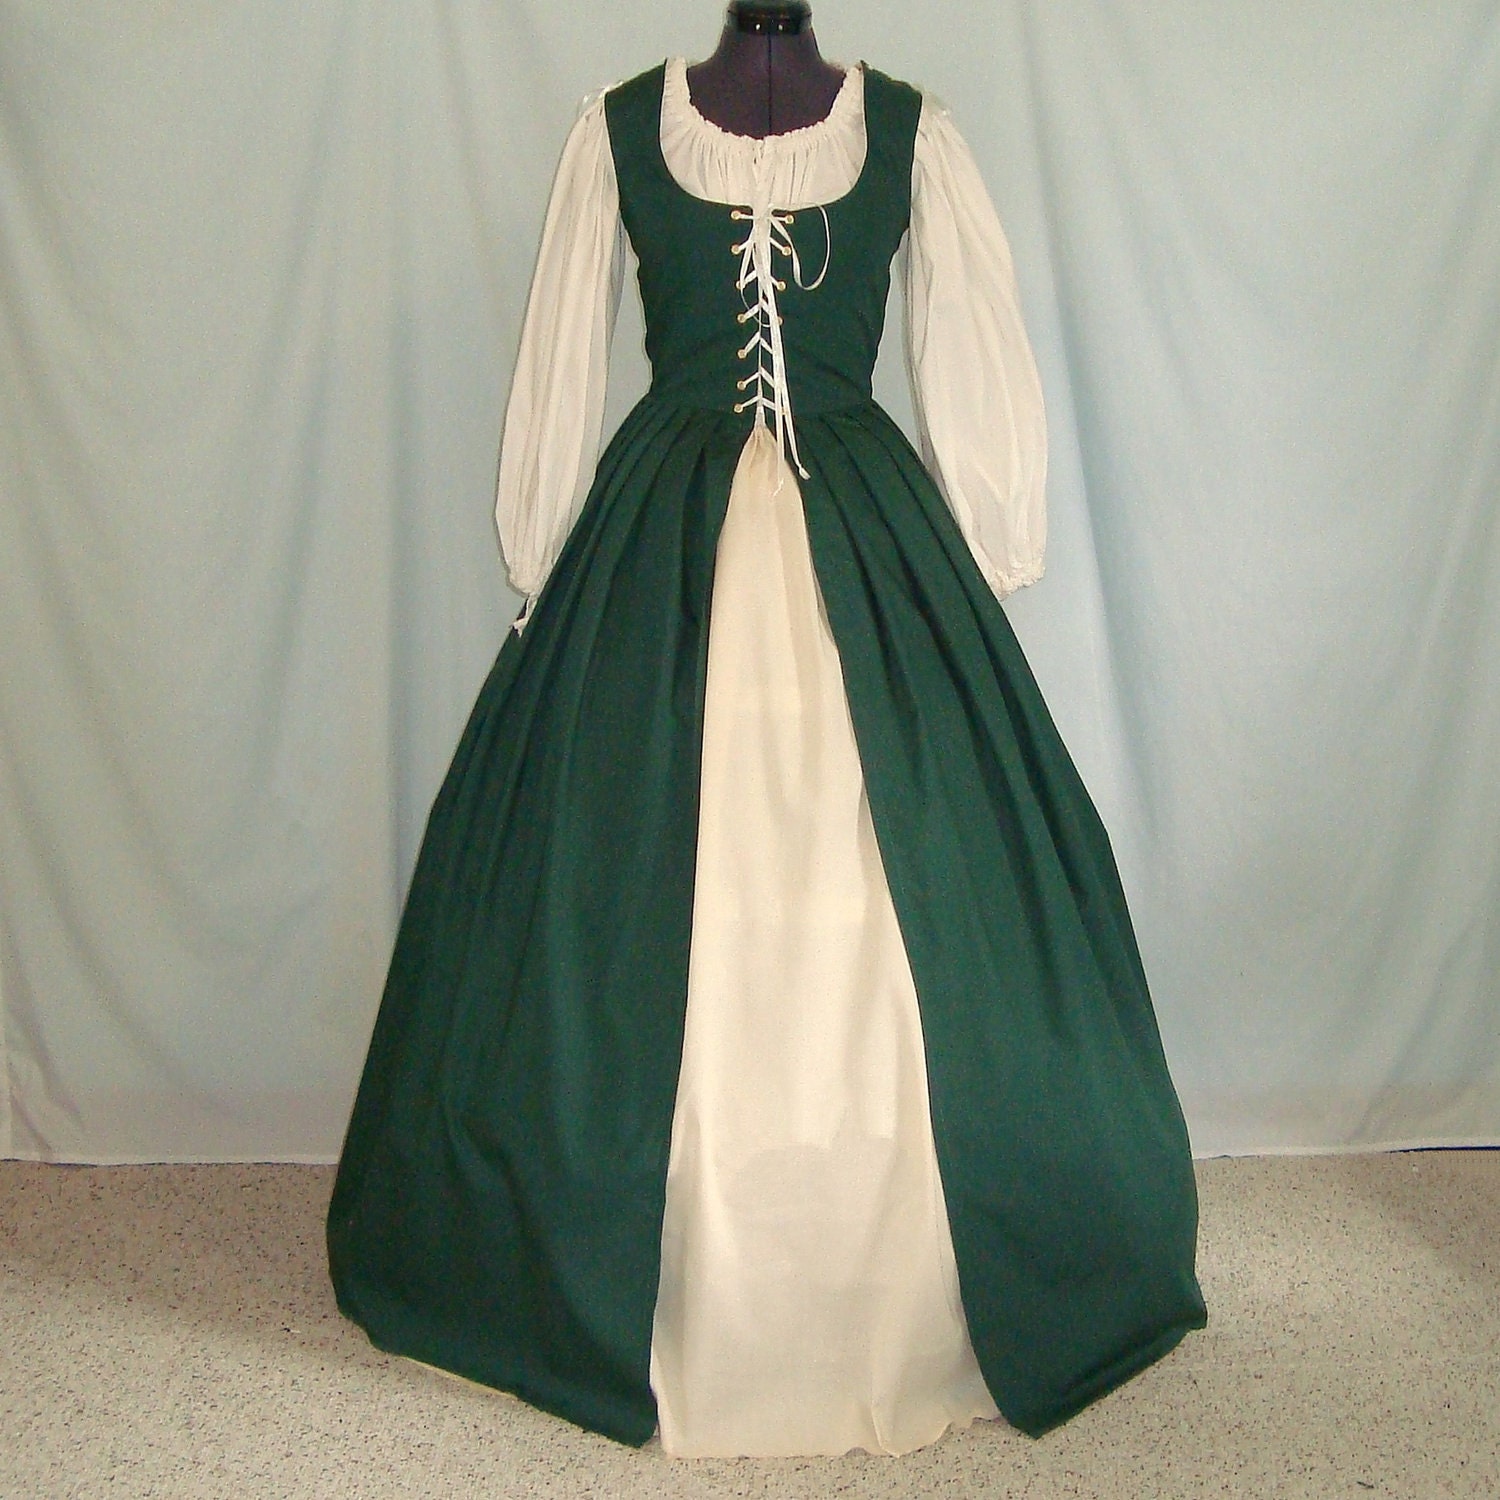 Traditional irish. Ирландия 19 век одежда. Национальный костюм Северной Ирландии. Ренессанс ирландский костюм. Народный костюм Северной Ирландии.